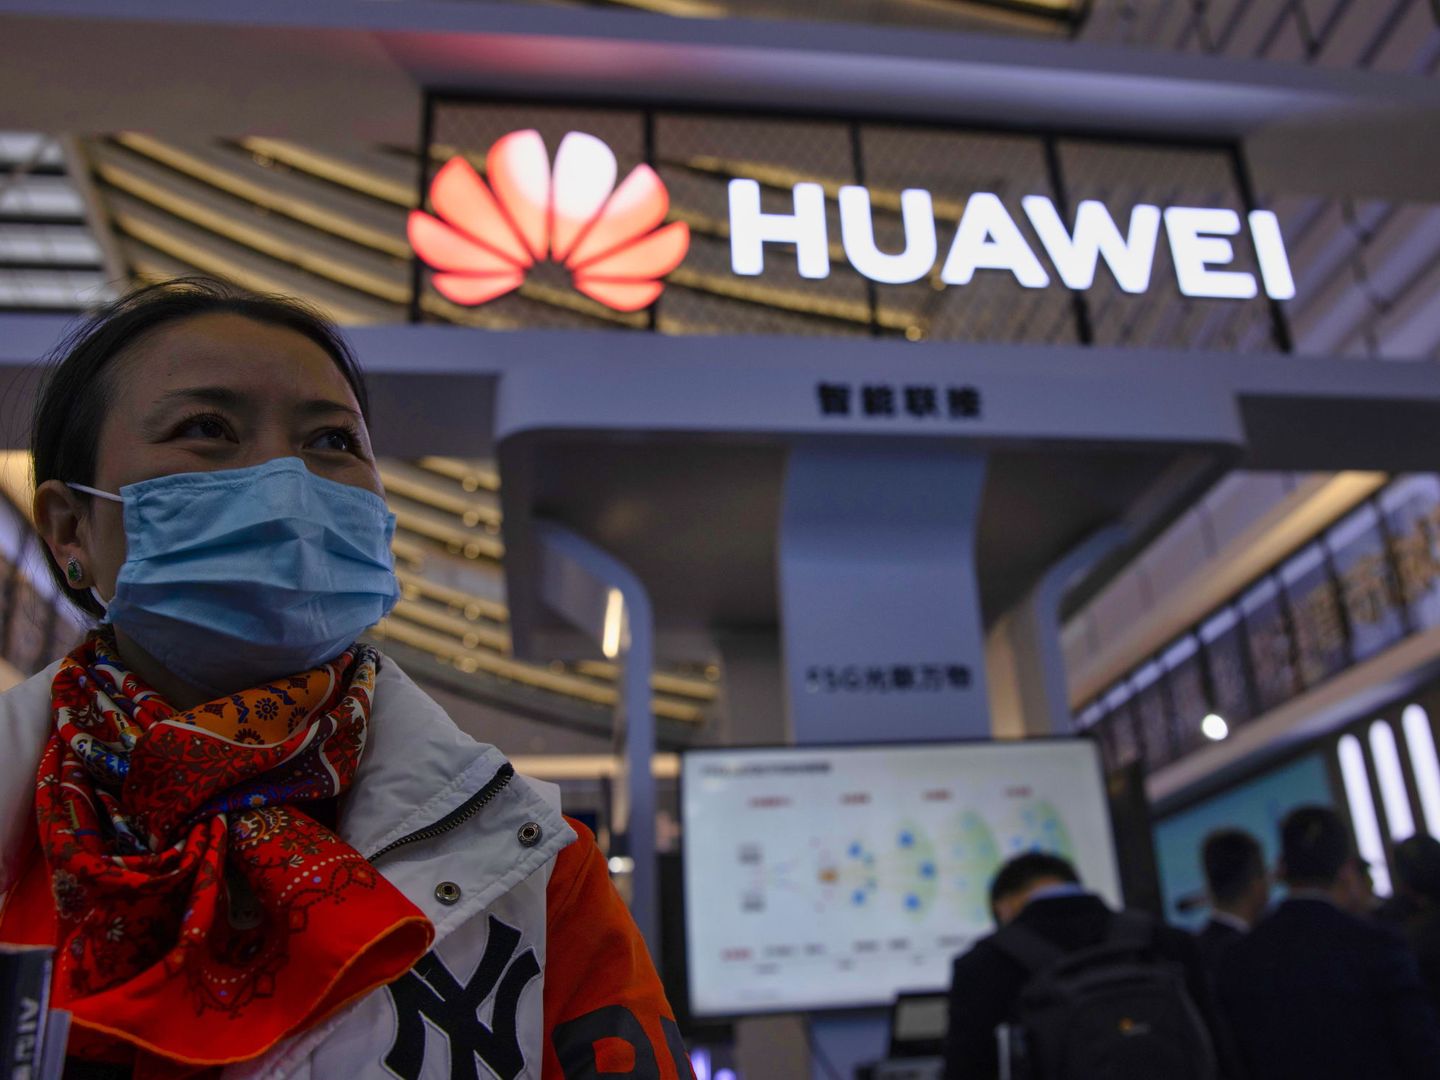 Mostrador de Huawei en una conferencia de electrónica en China. (Reuters)